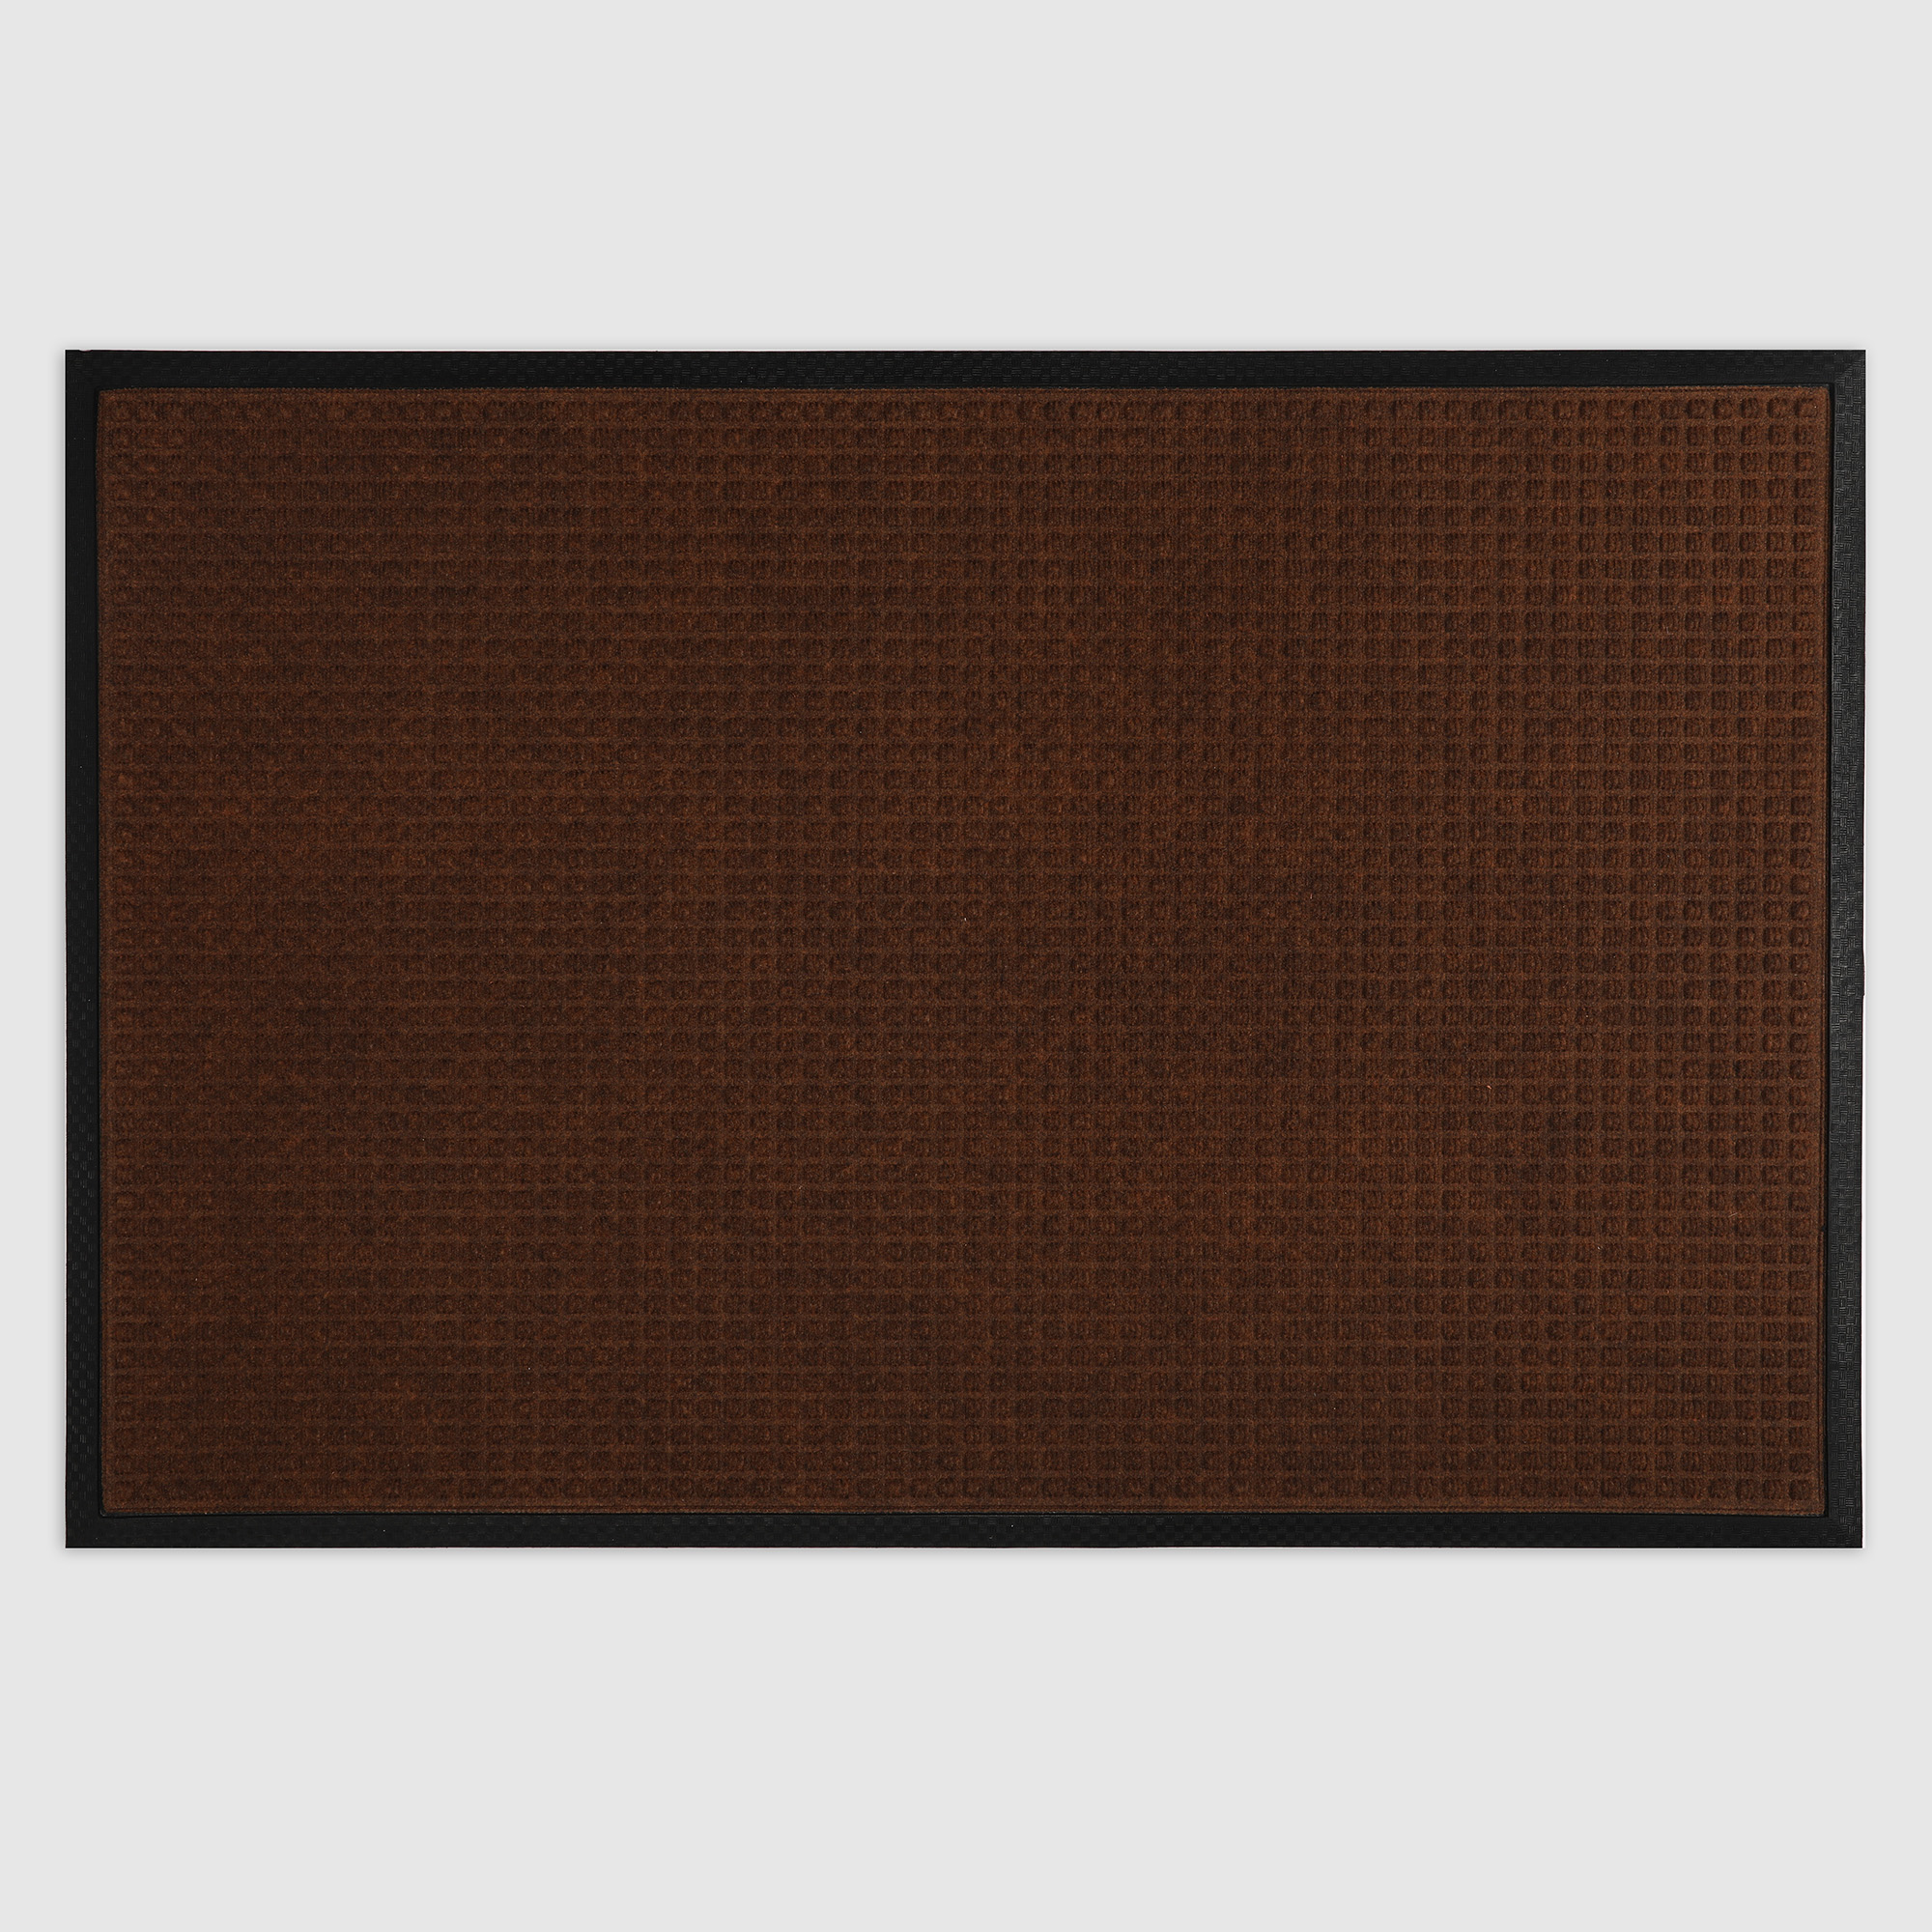 Коврик Jansons Balers коричневый 80х120 см - фото 1